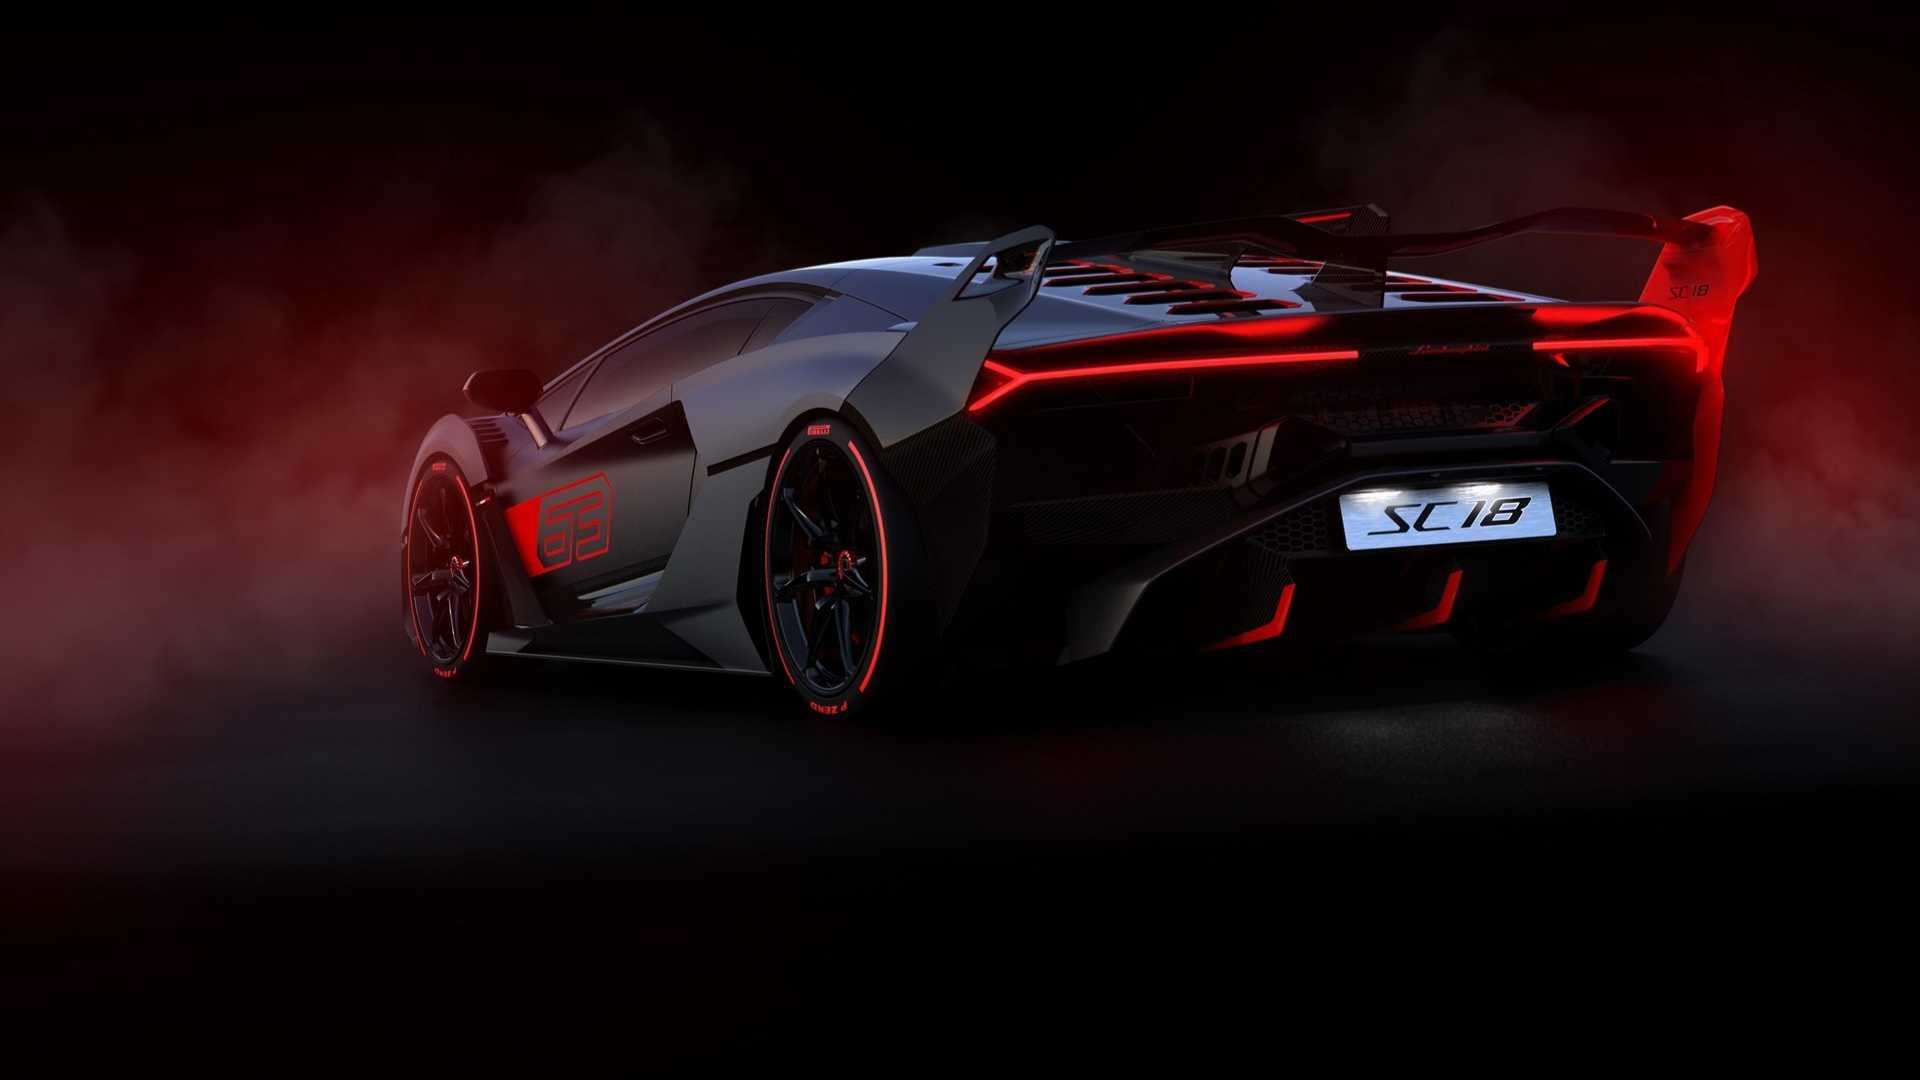 Siêu phẩm Lamborghini SC18 Alston là một điều phi thường với thiết kế đẹp mắt và công nghệ tiên tiến. Hình ảnh của nó sẽ thổi bay mọi khát khao về một dòng xe sang trọng và đỉnh cao. Hãy thưởng thức những tuyệt tác trên bức ảnh.